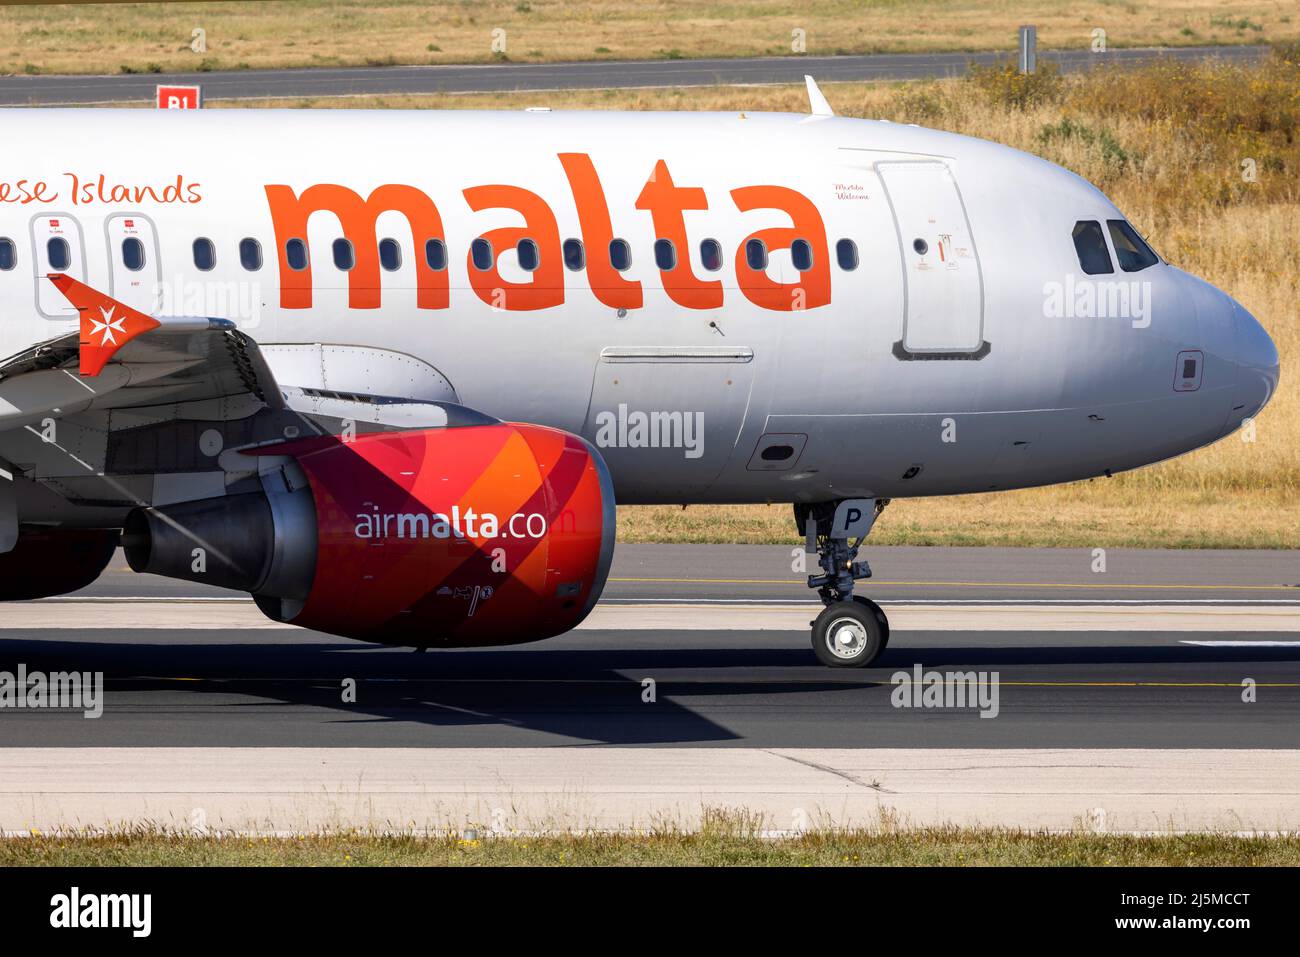 Air Malta Airbus A320-214 (REG: 9h-AEP) en vue de prendre la piste 31 abeam taxi Charlie. Banque D'Images